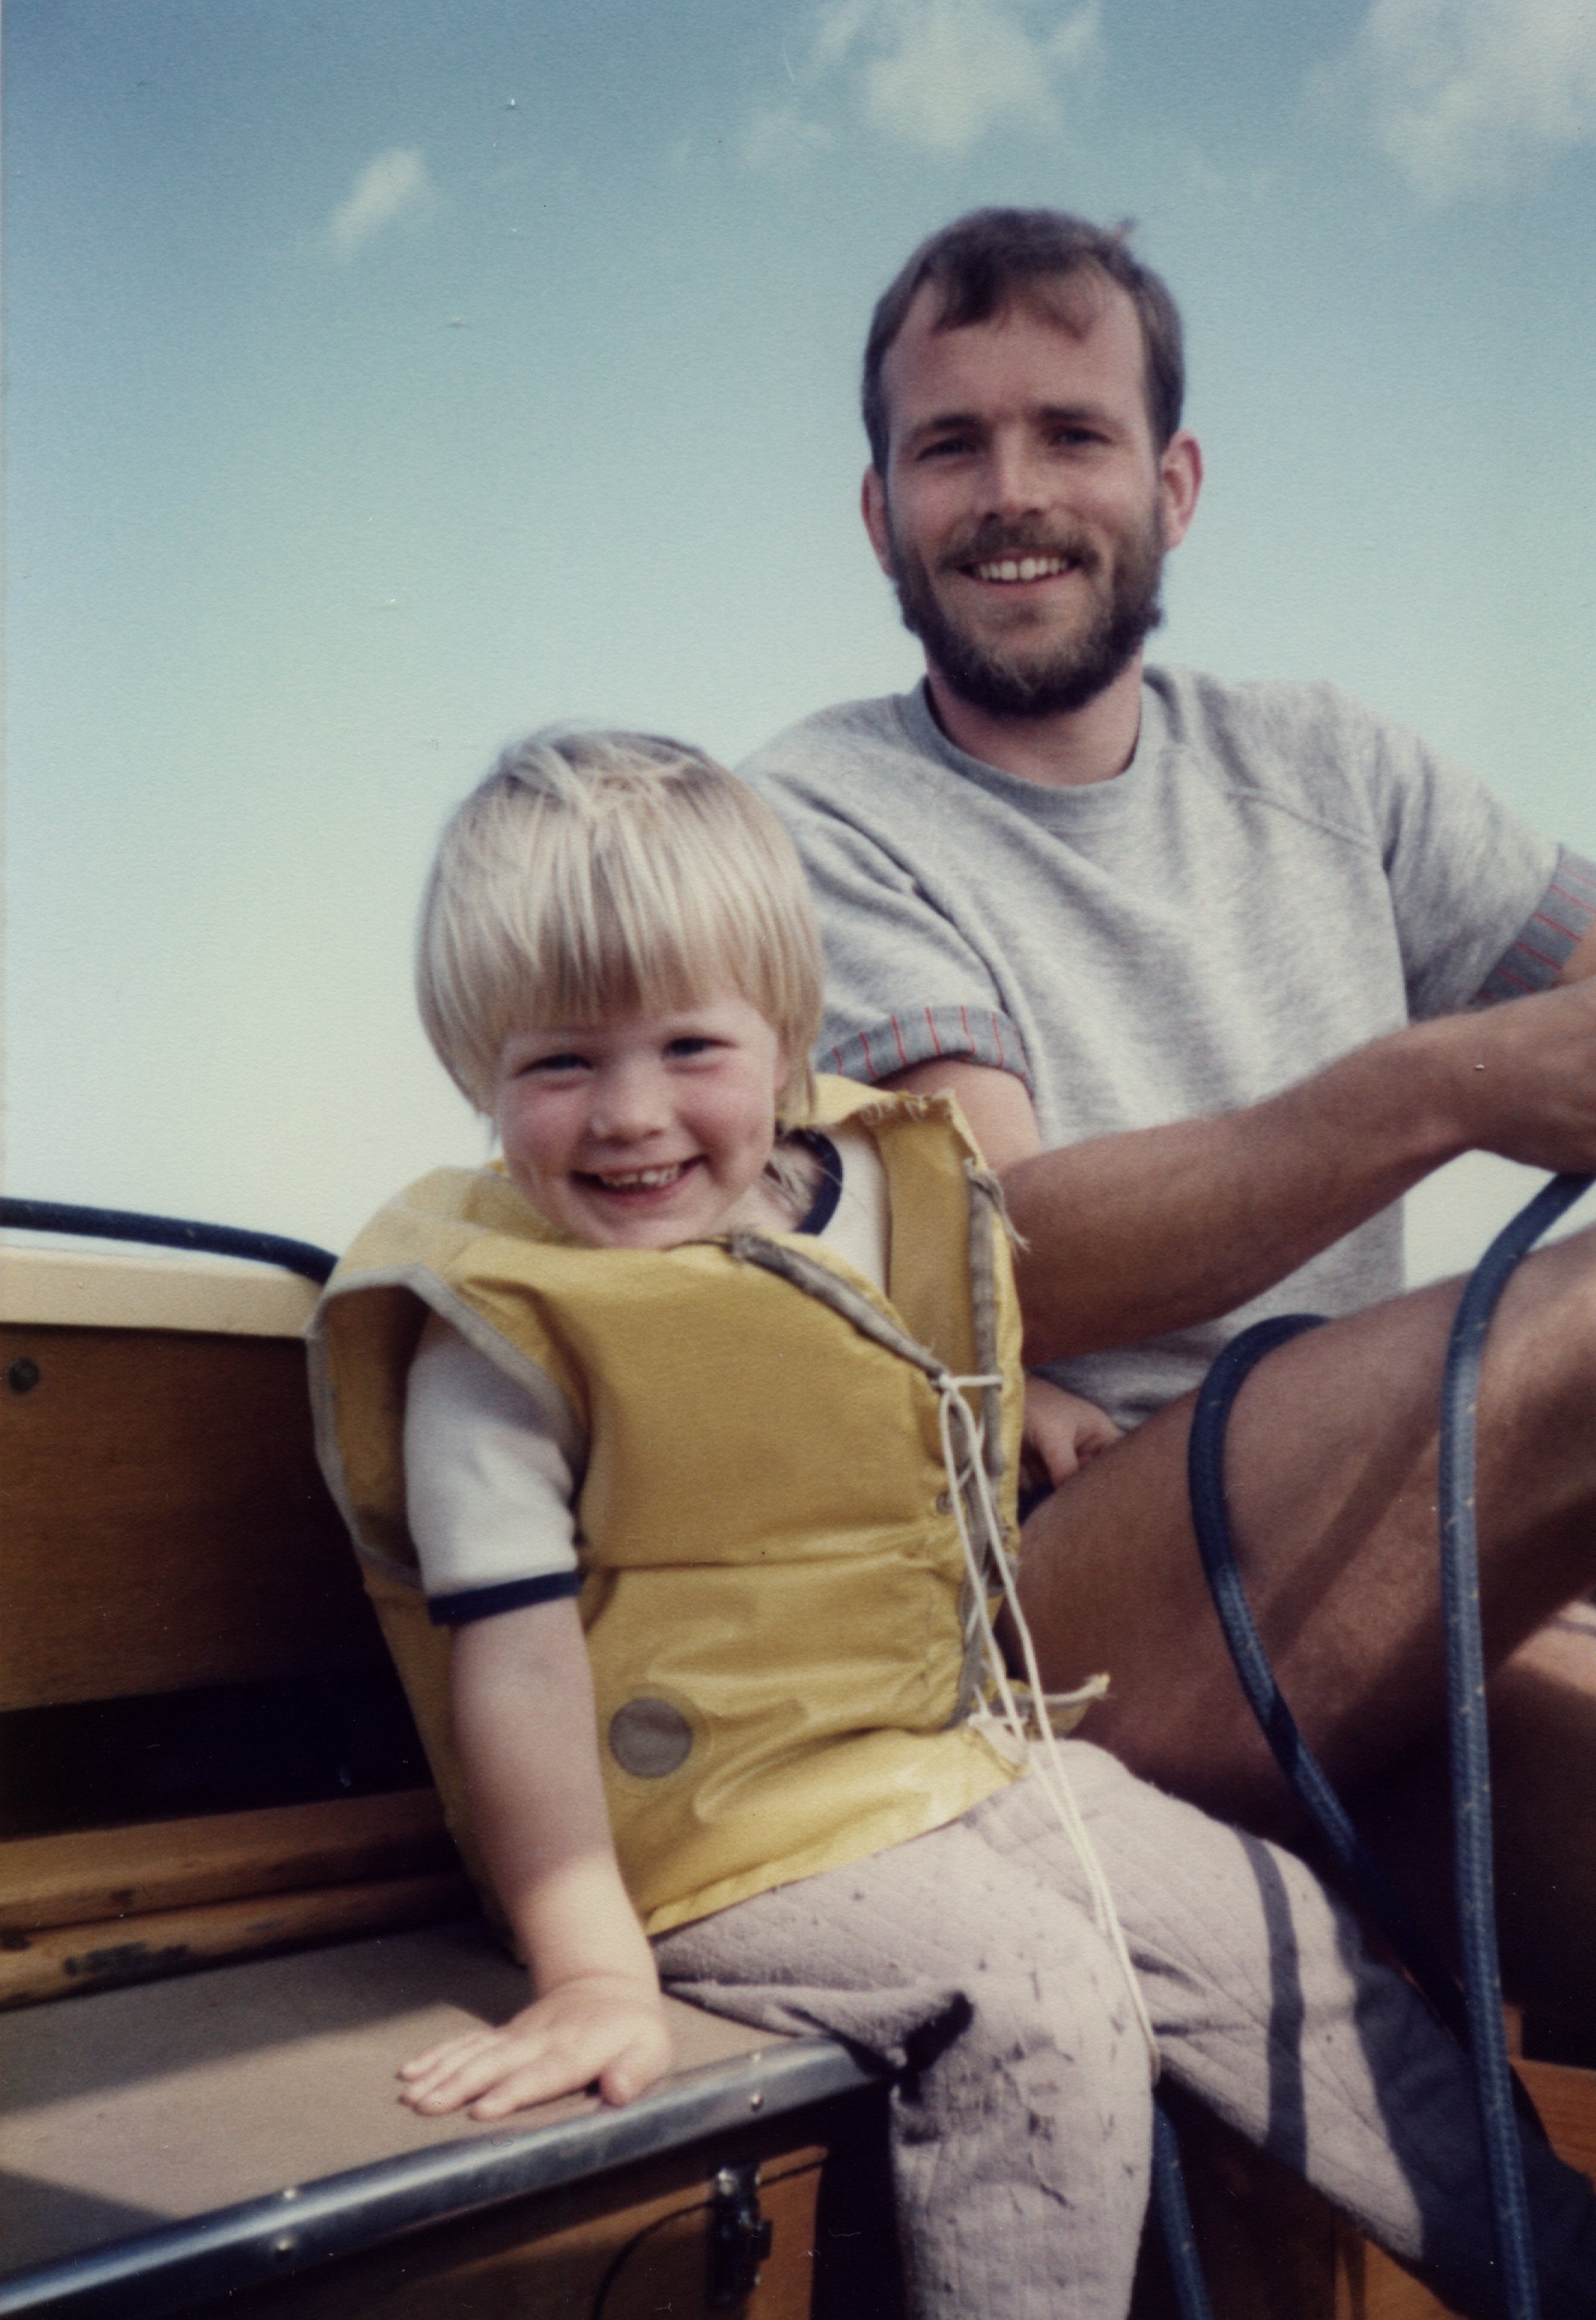 nick and dad sail boat